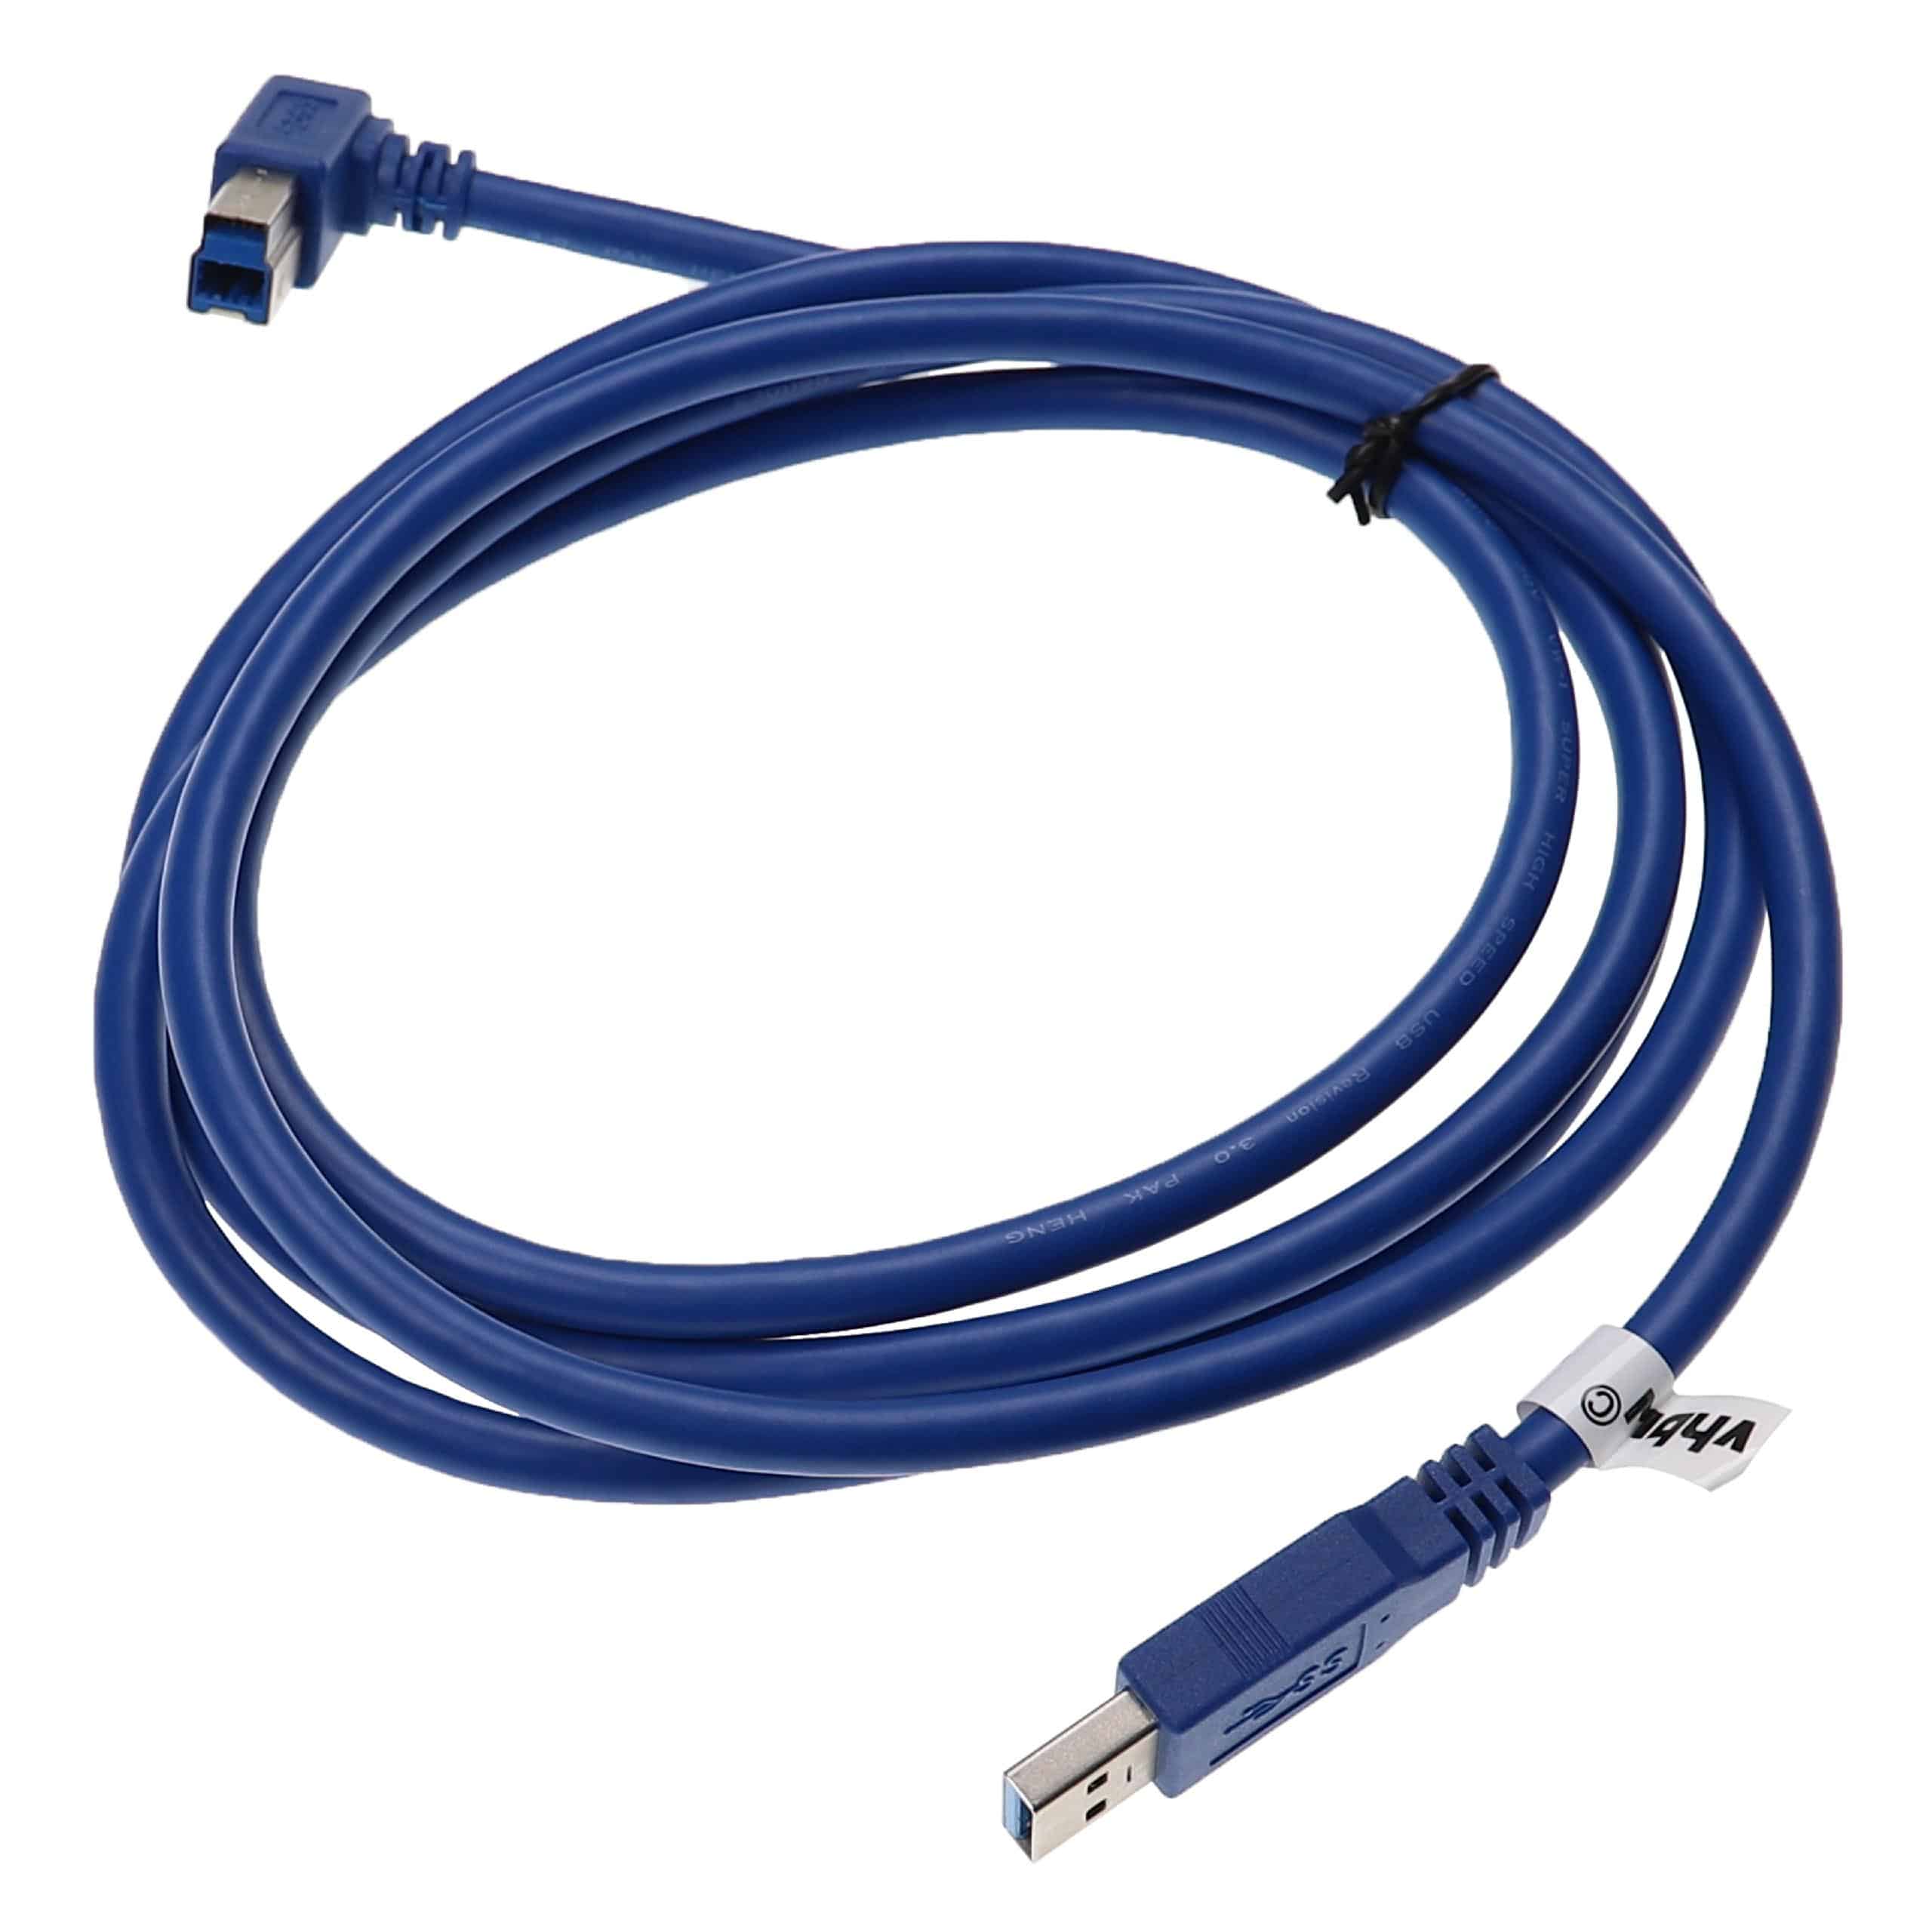 Cable USB 3.0 tipo A a tipo B - Cable de datos USB 1,8 m azul